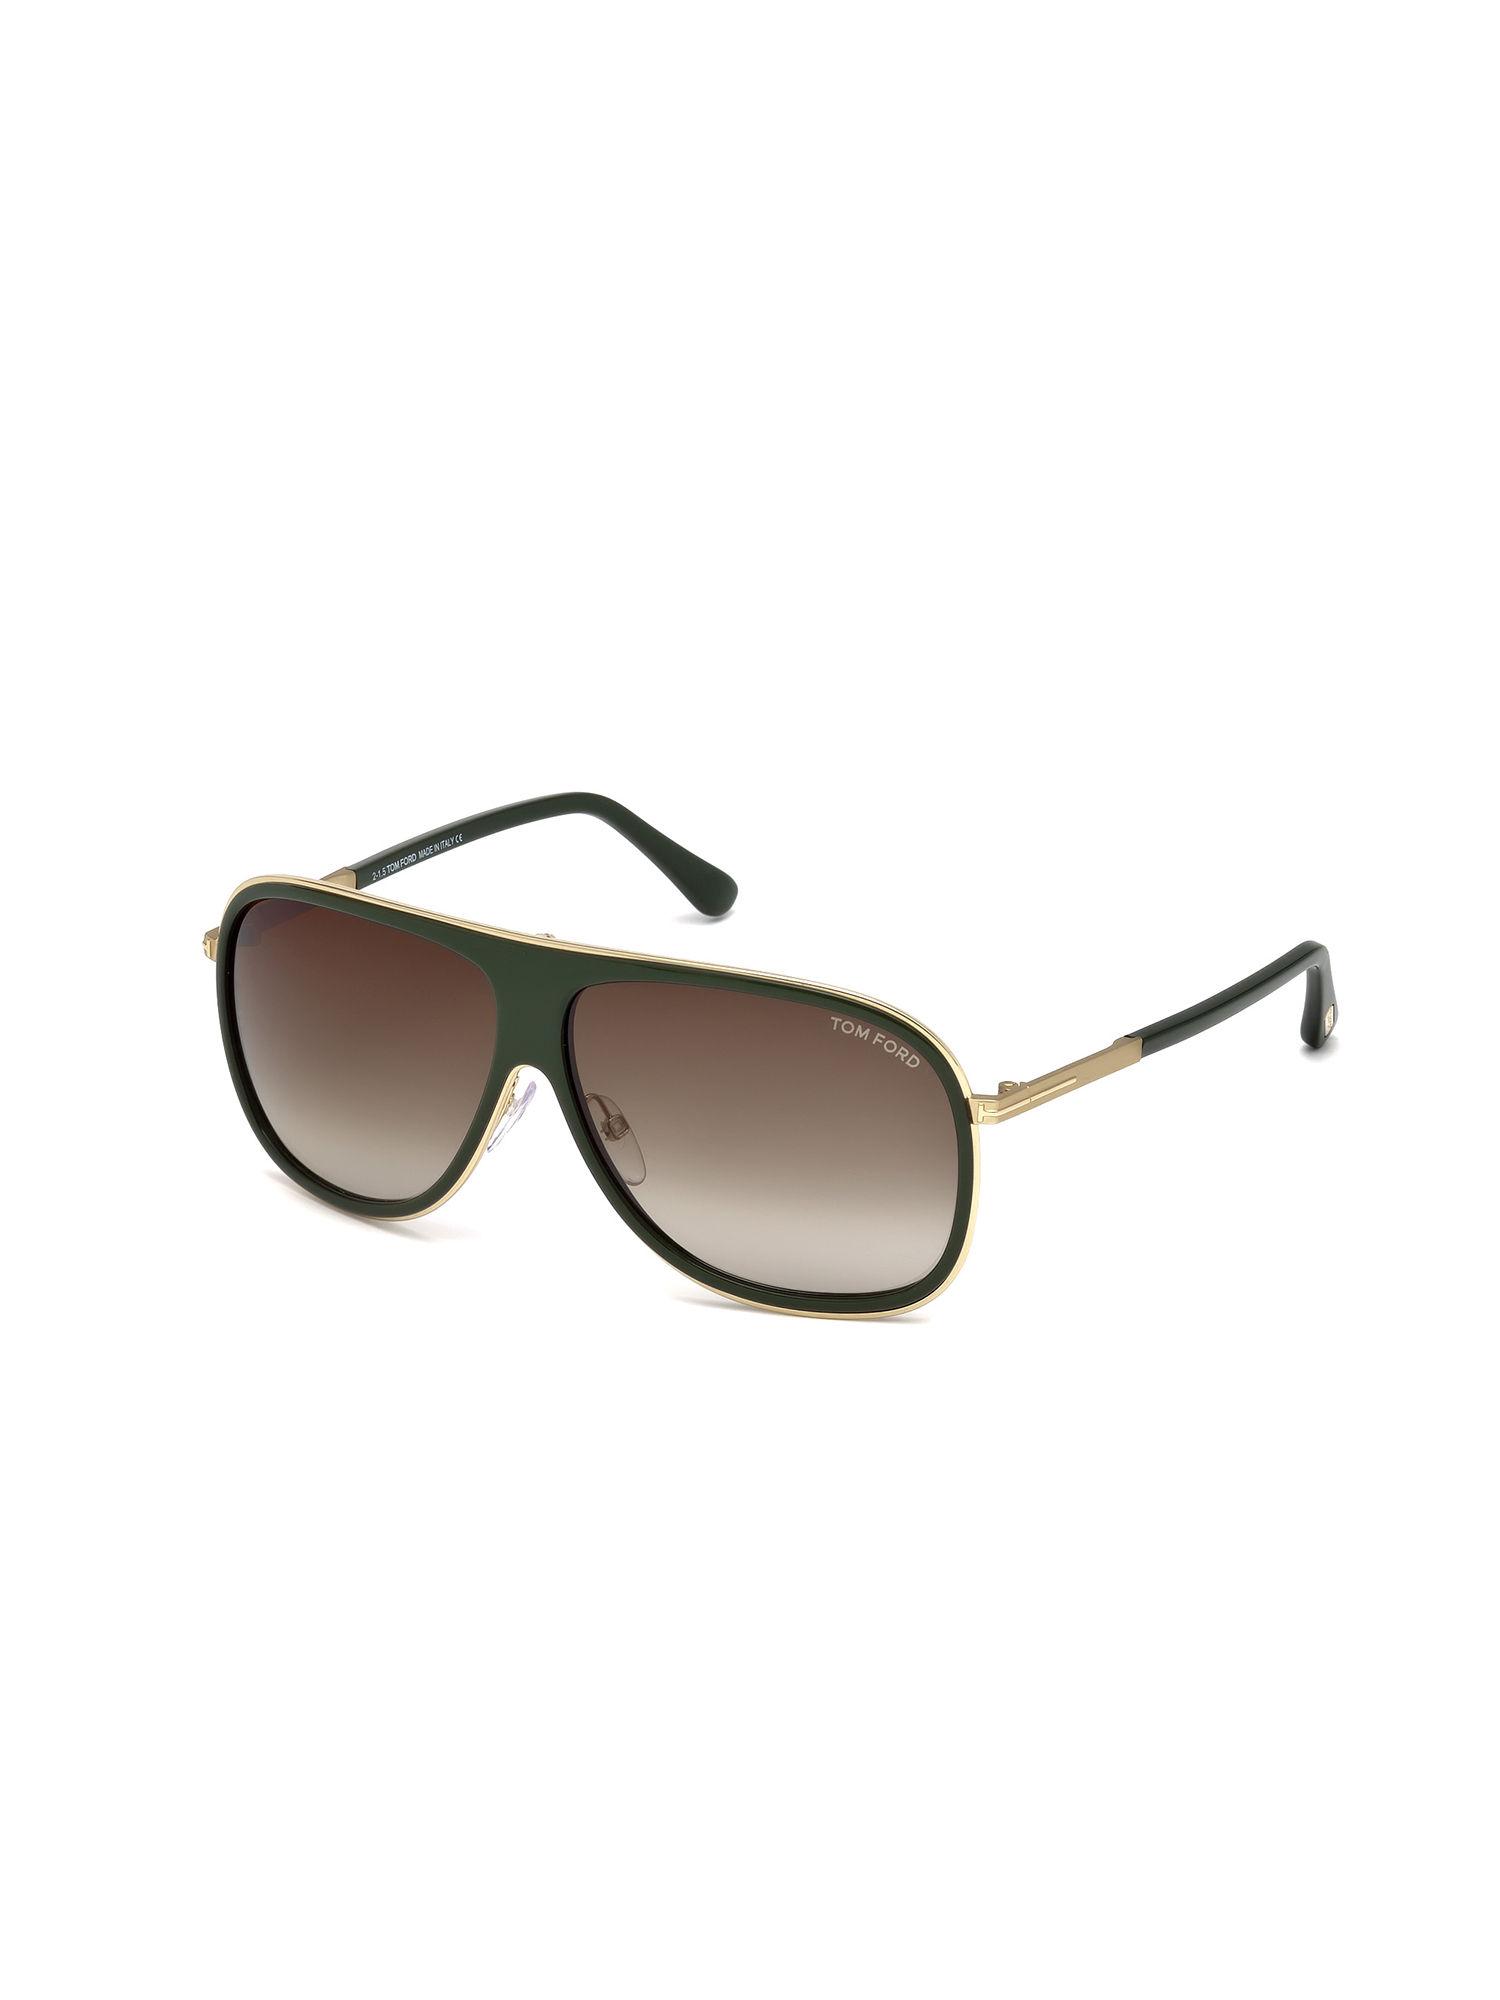 green oval sunglasses - ft0462-f 62 98k